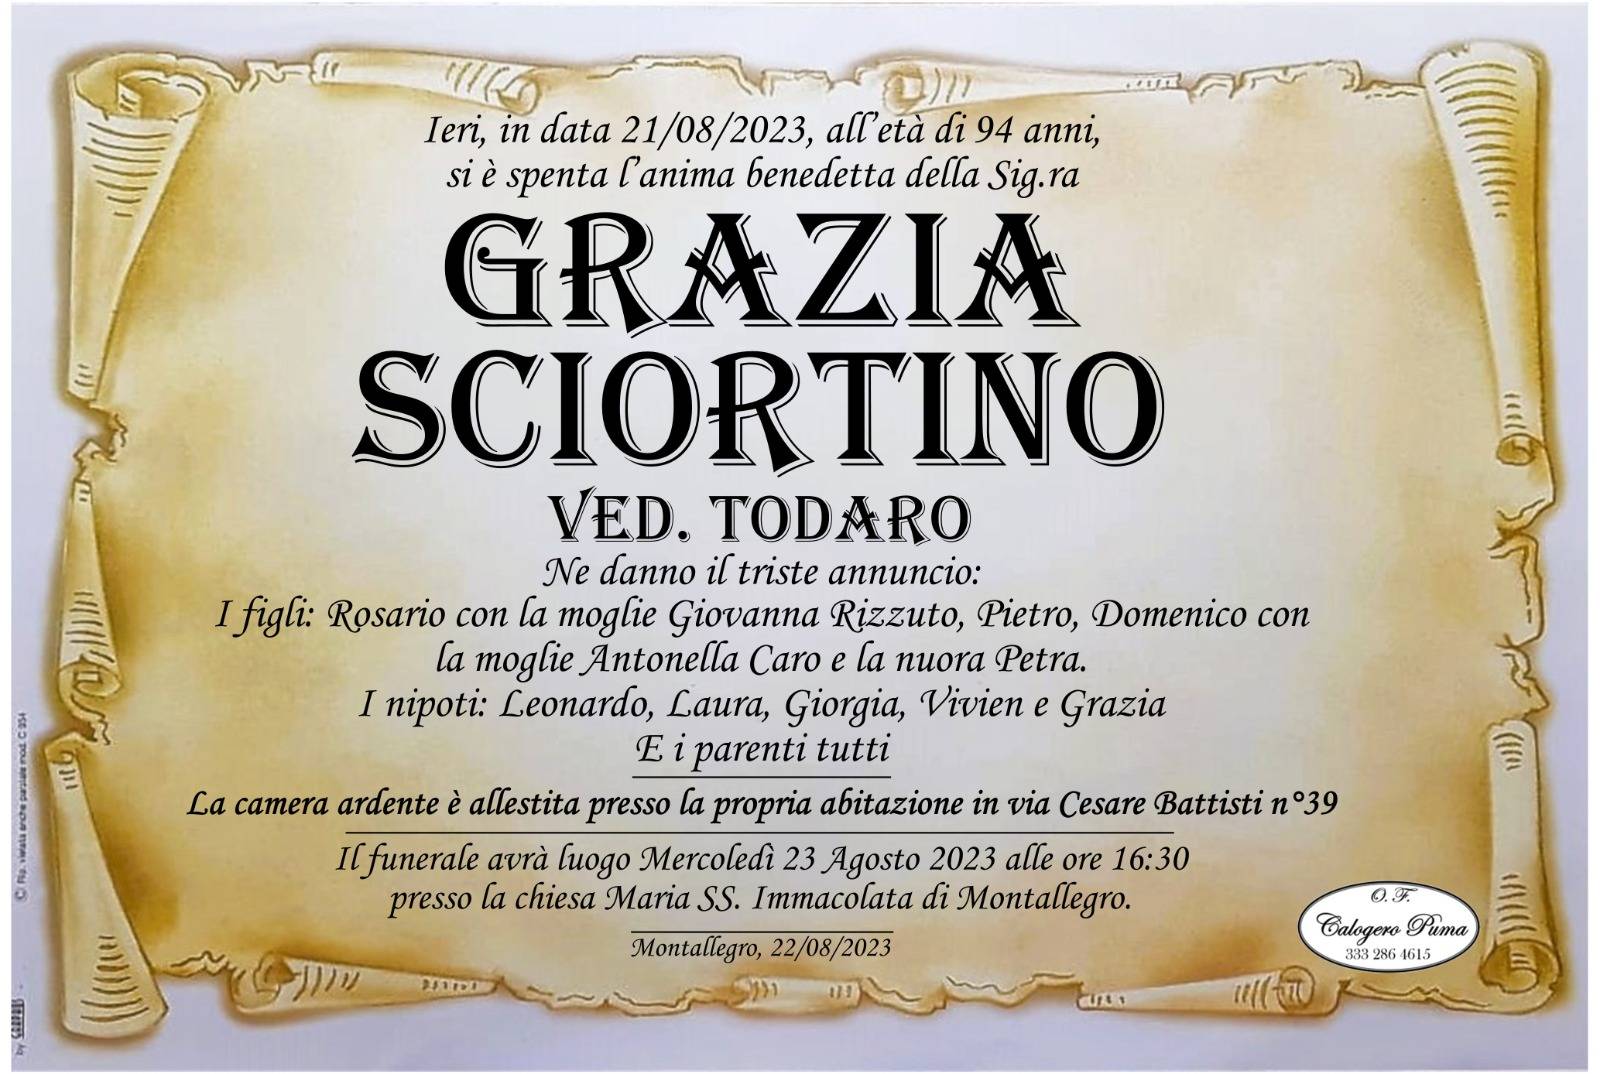 Grazia Sciortino